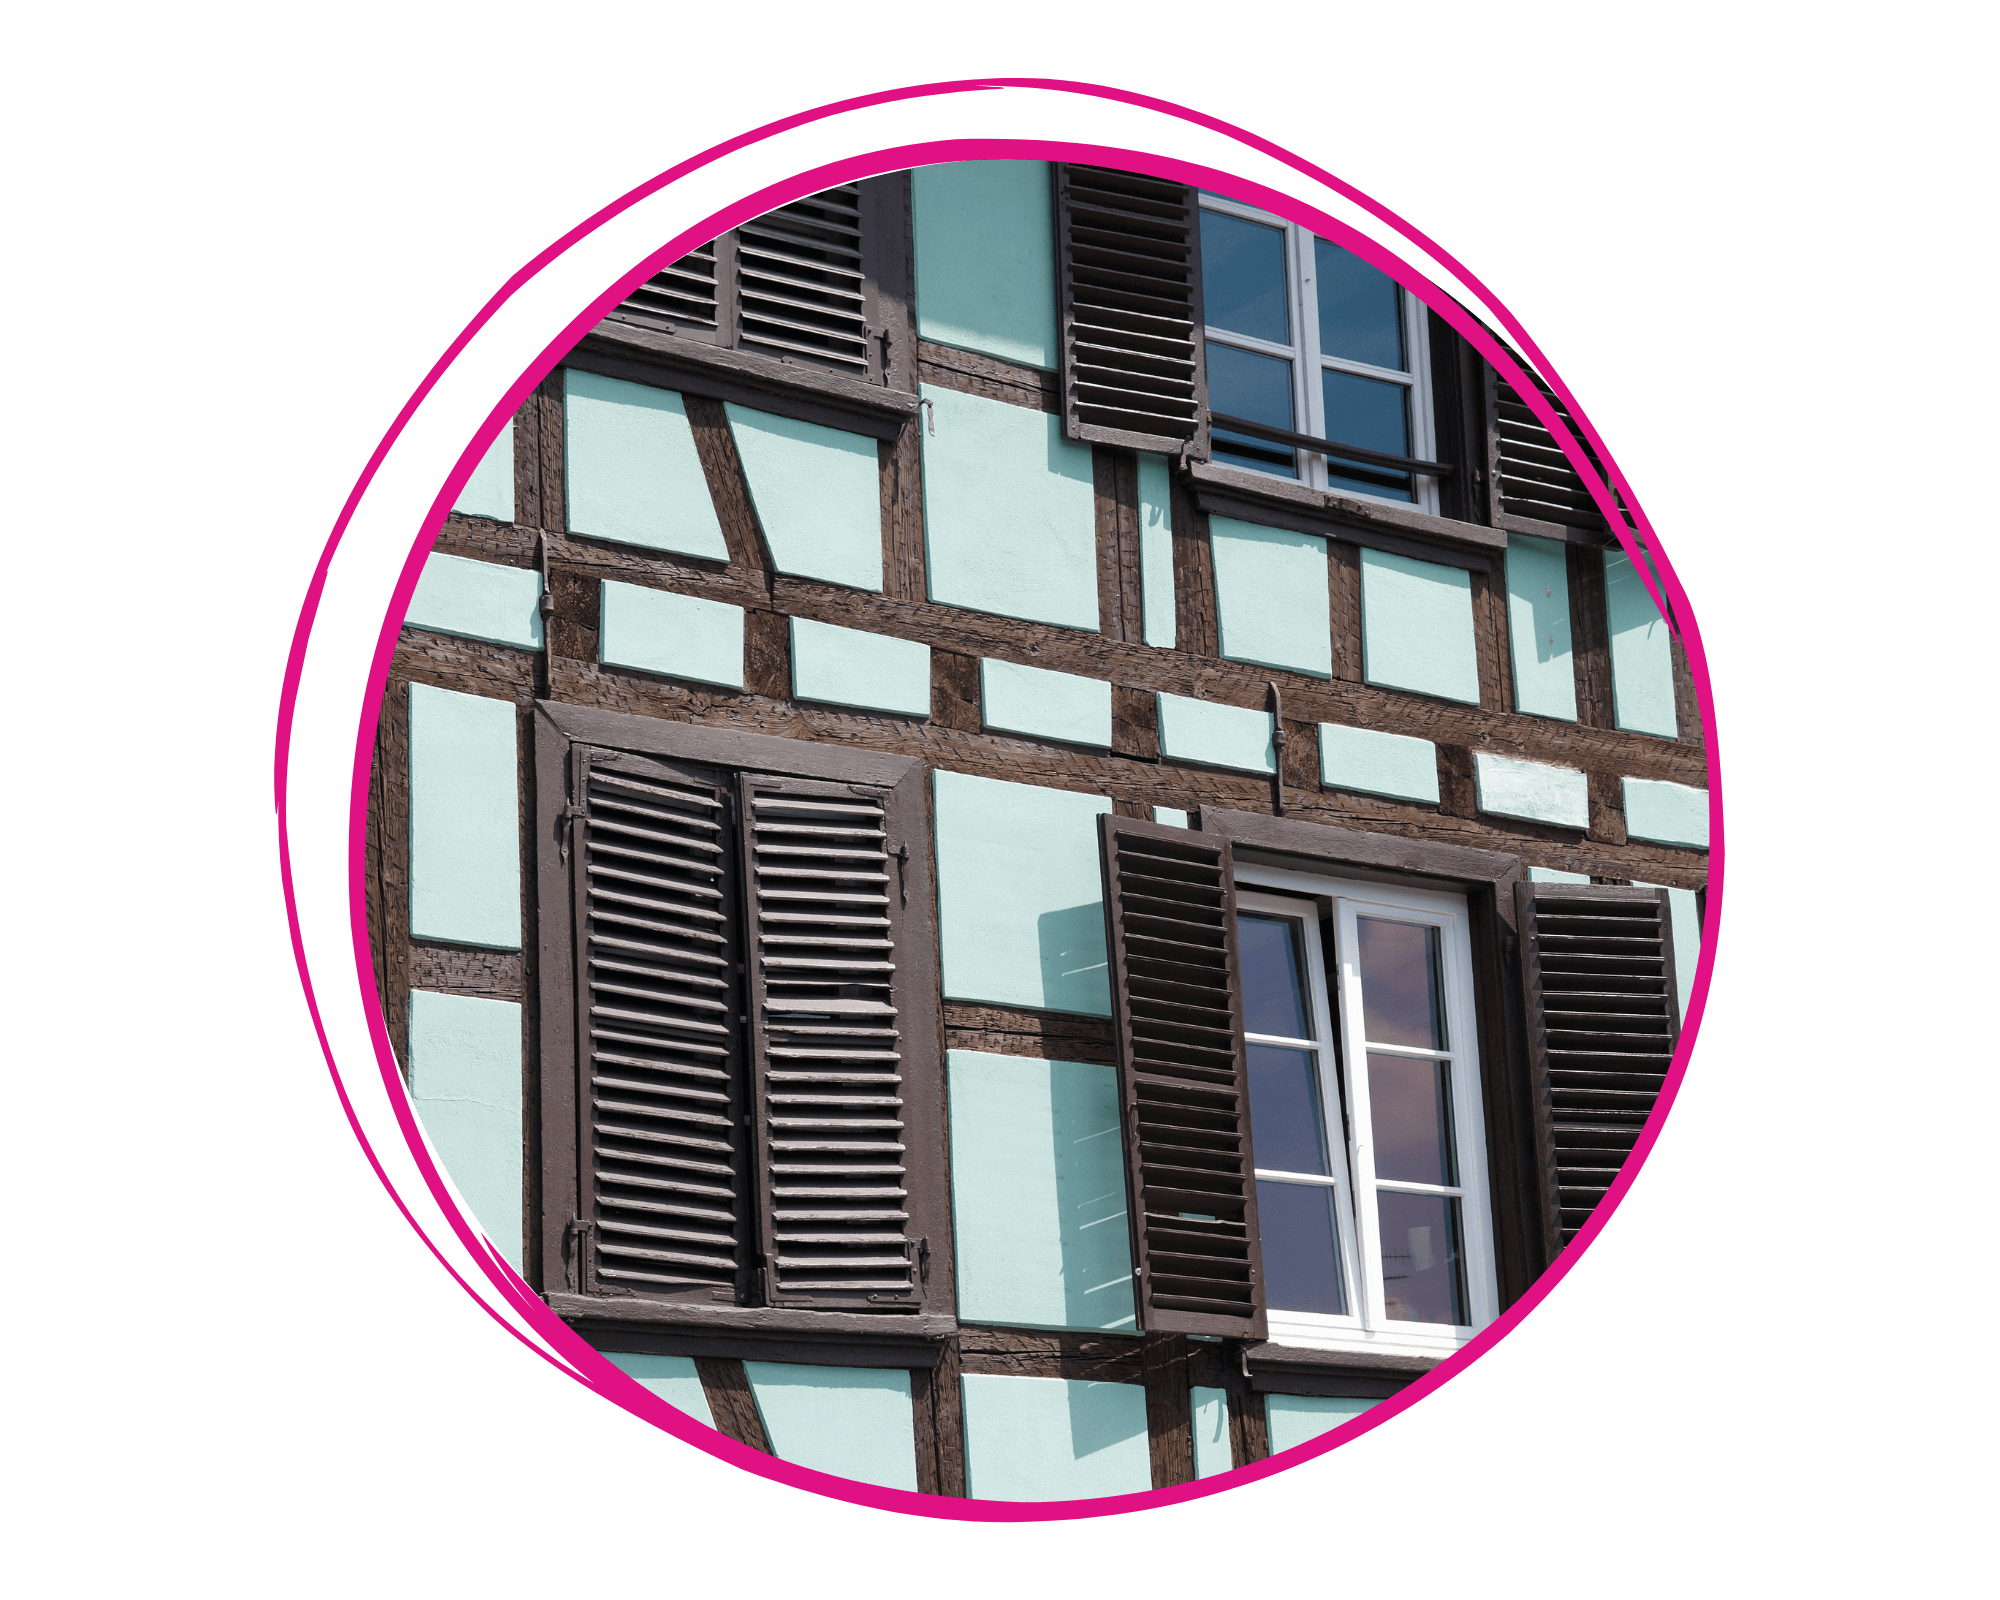 Image de présentation de la catégorie maison déco et travaux : maison alsacienne bleu dans un rond aux contours roses.